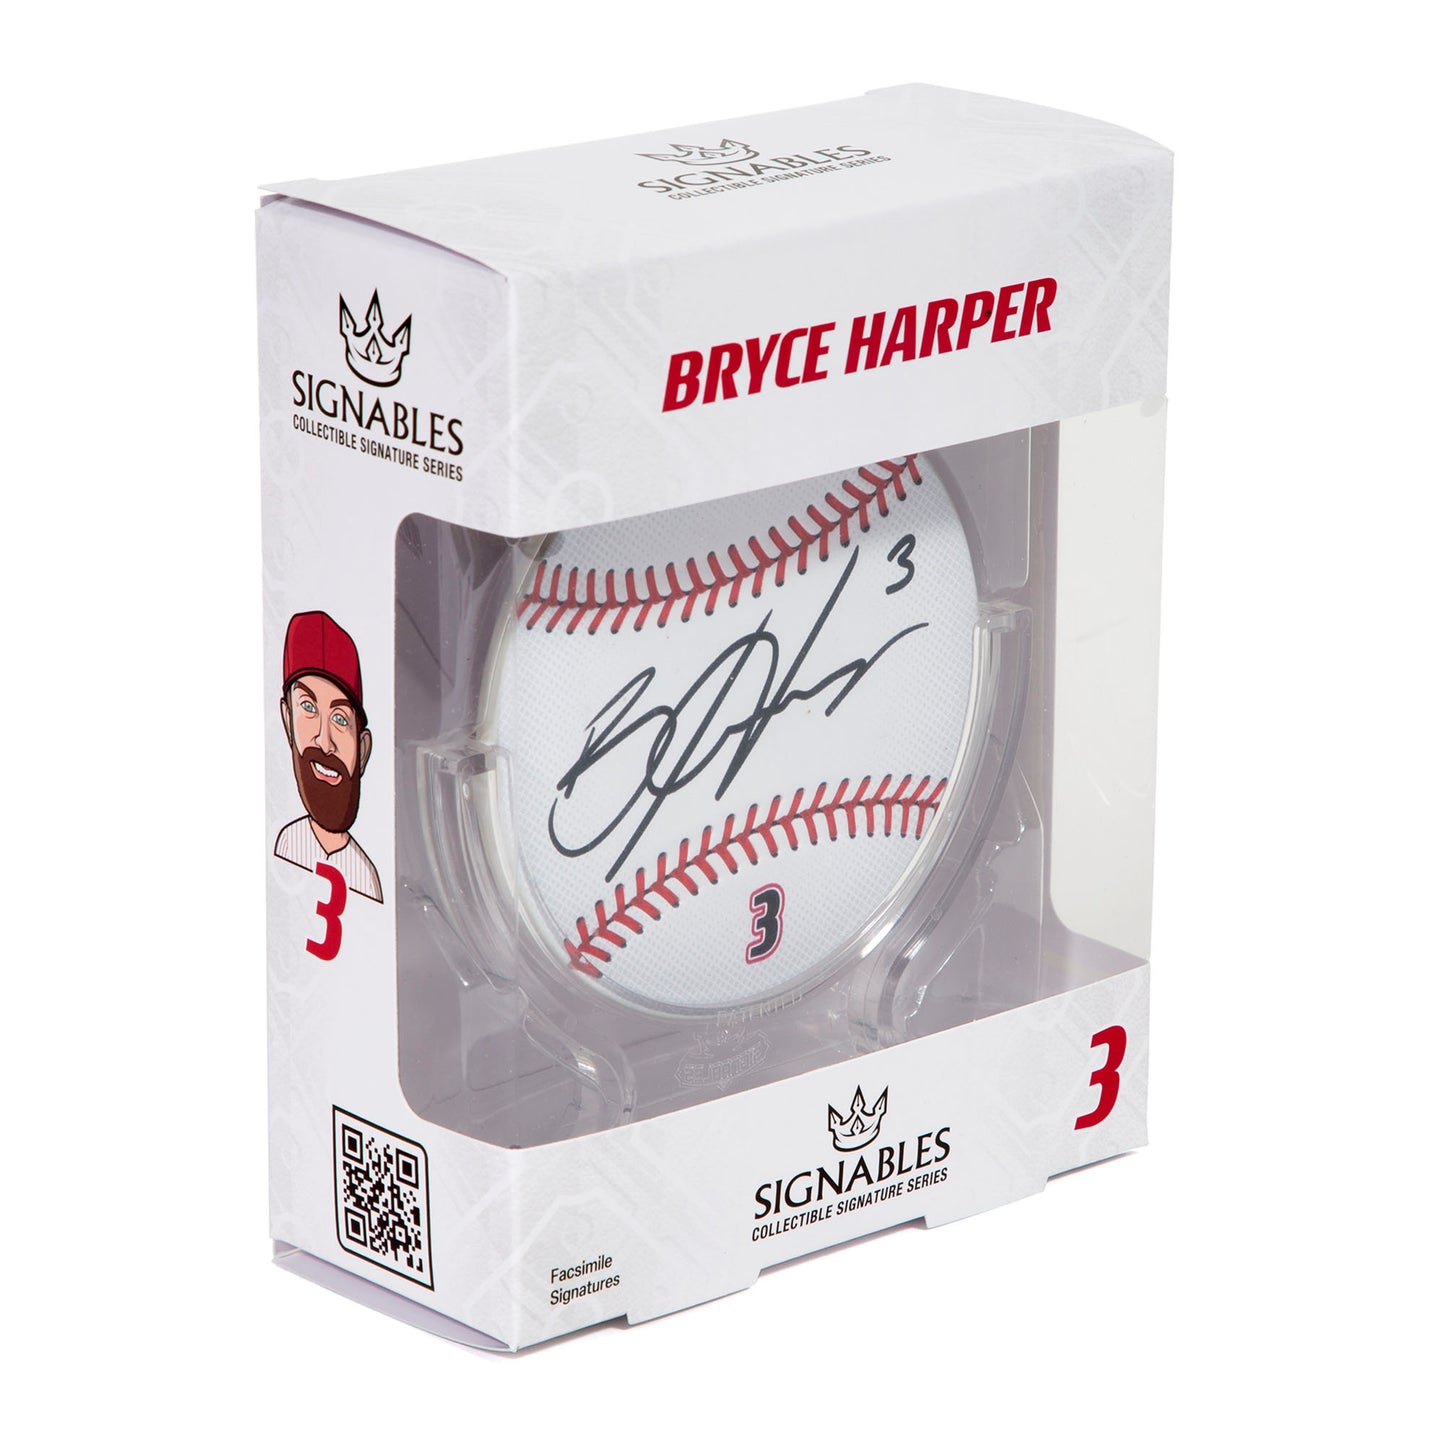 Bryce Harper MLBPA Signables Baseball Sports Collectible Digitally Signed